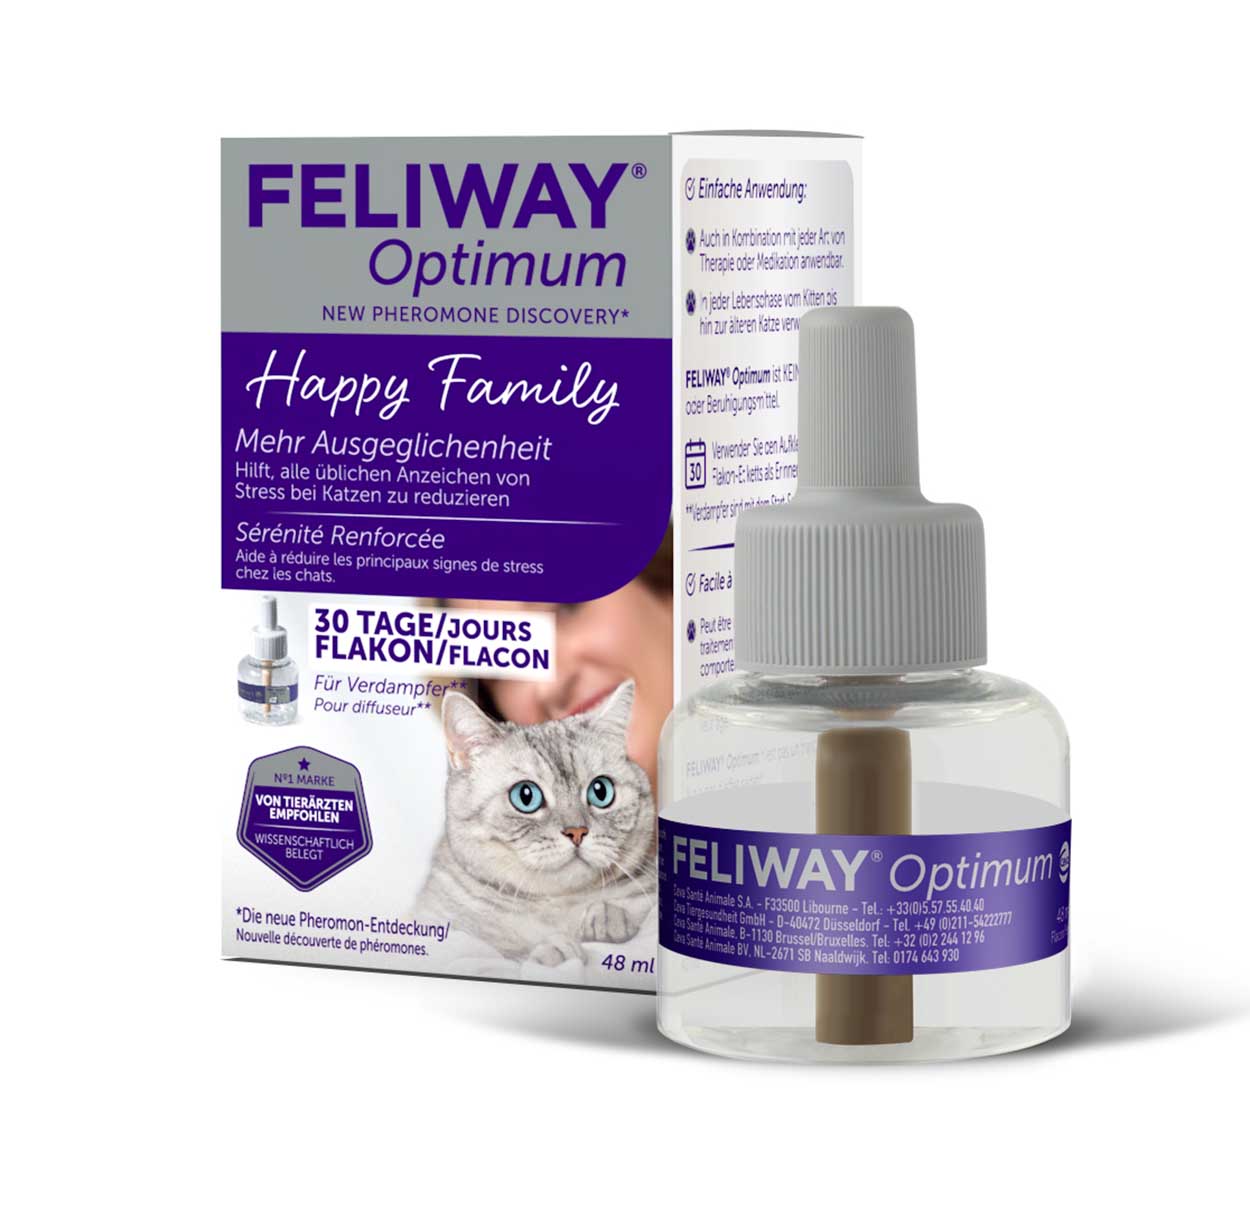 Feliway Optimum Nachfüller preiswert und günstig, Lösung gegen Stress bei  Katzen